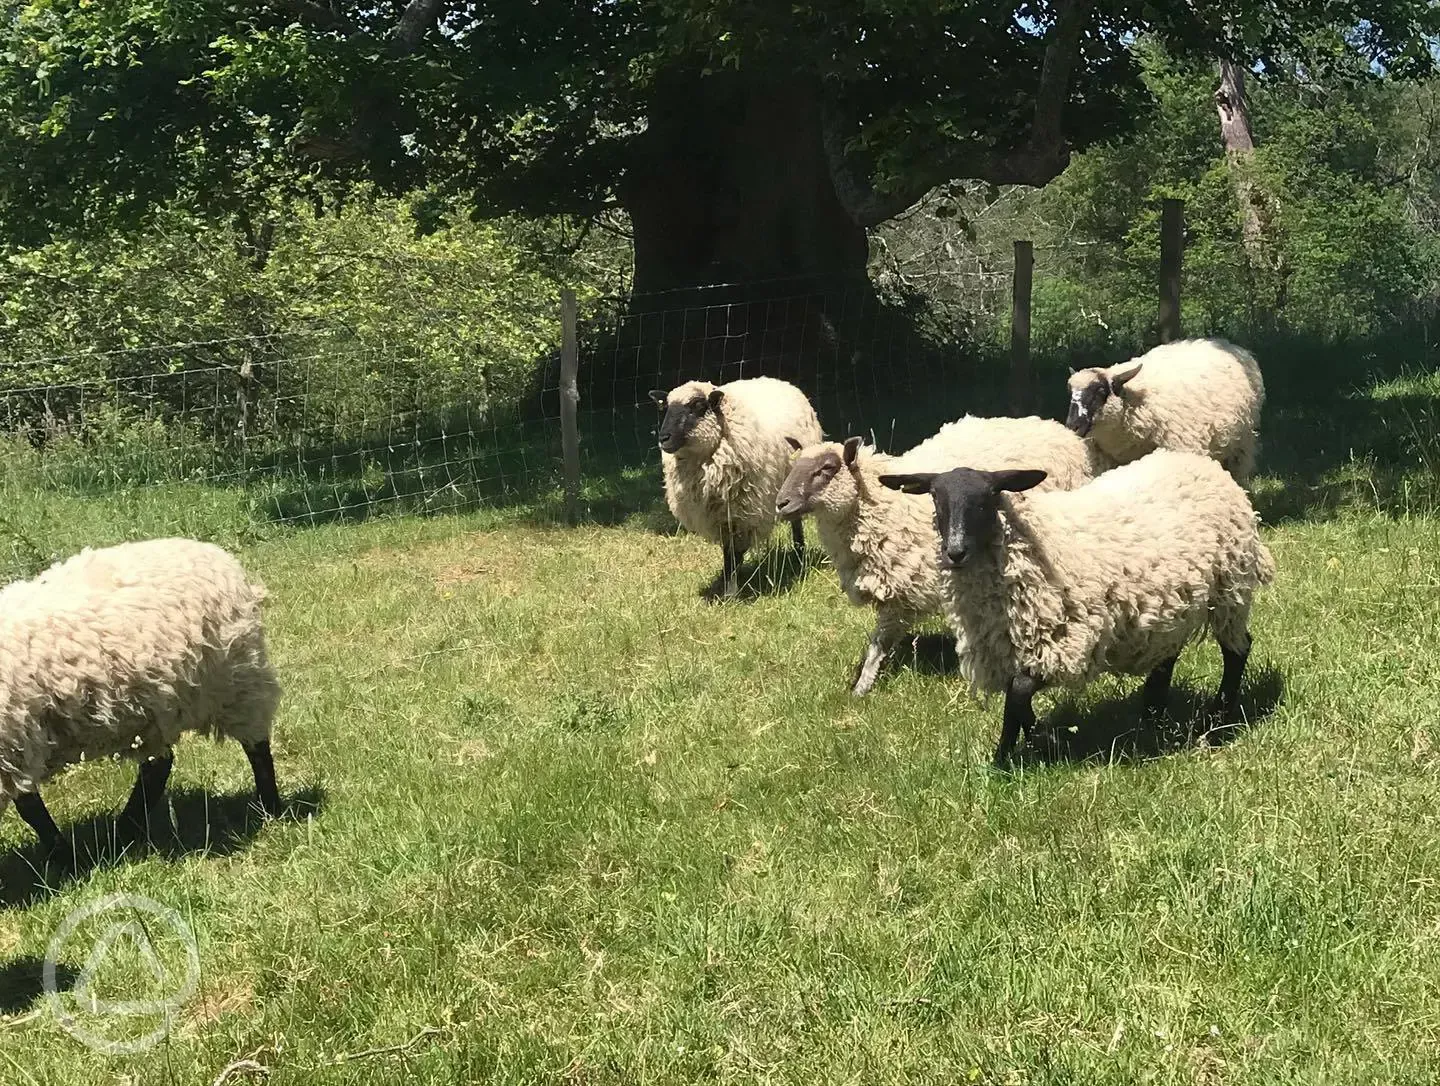 Sheep on the farm